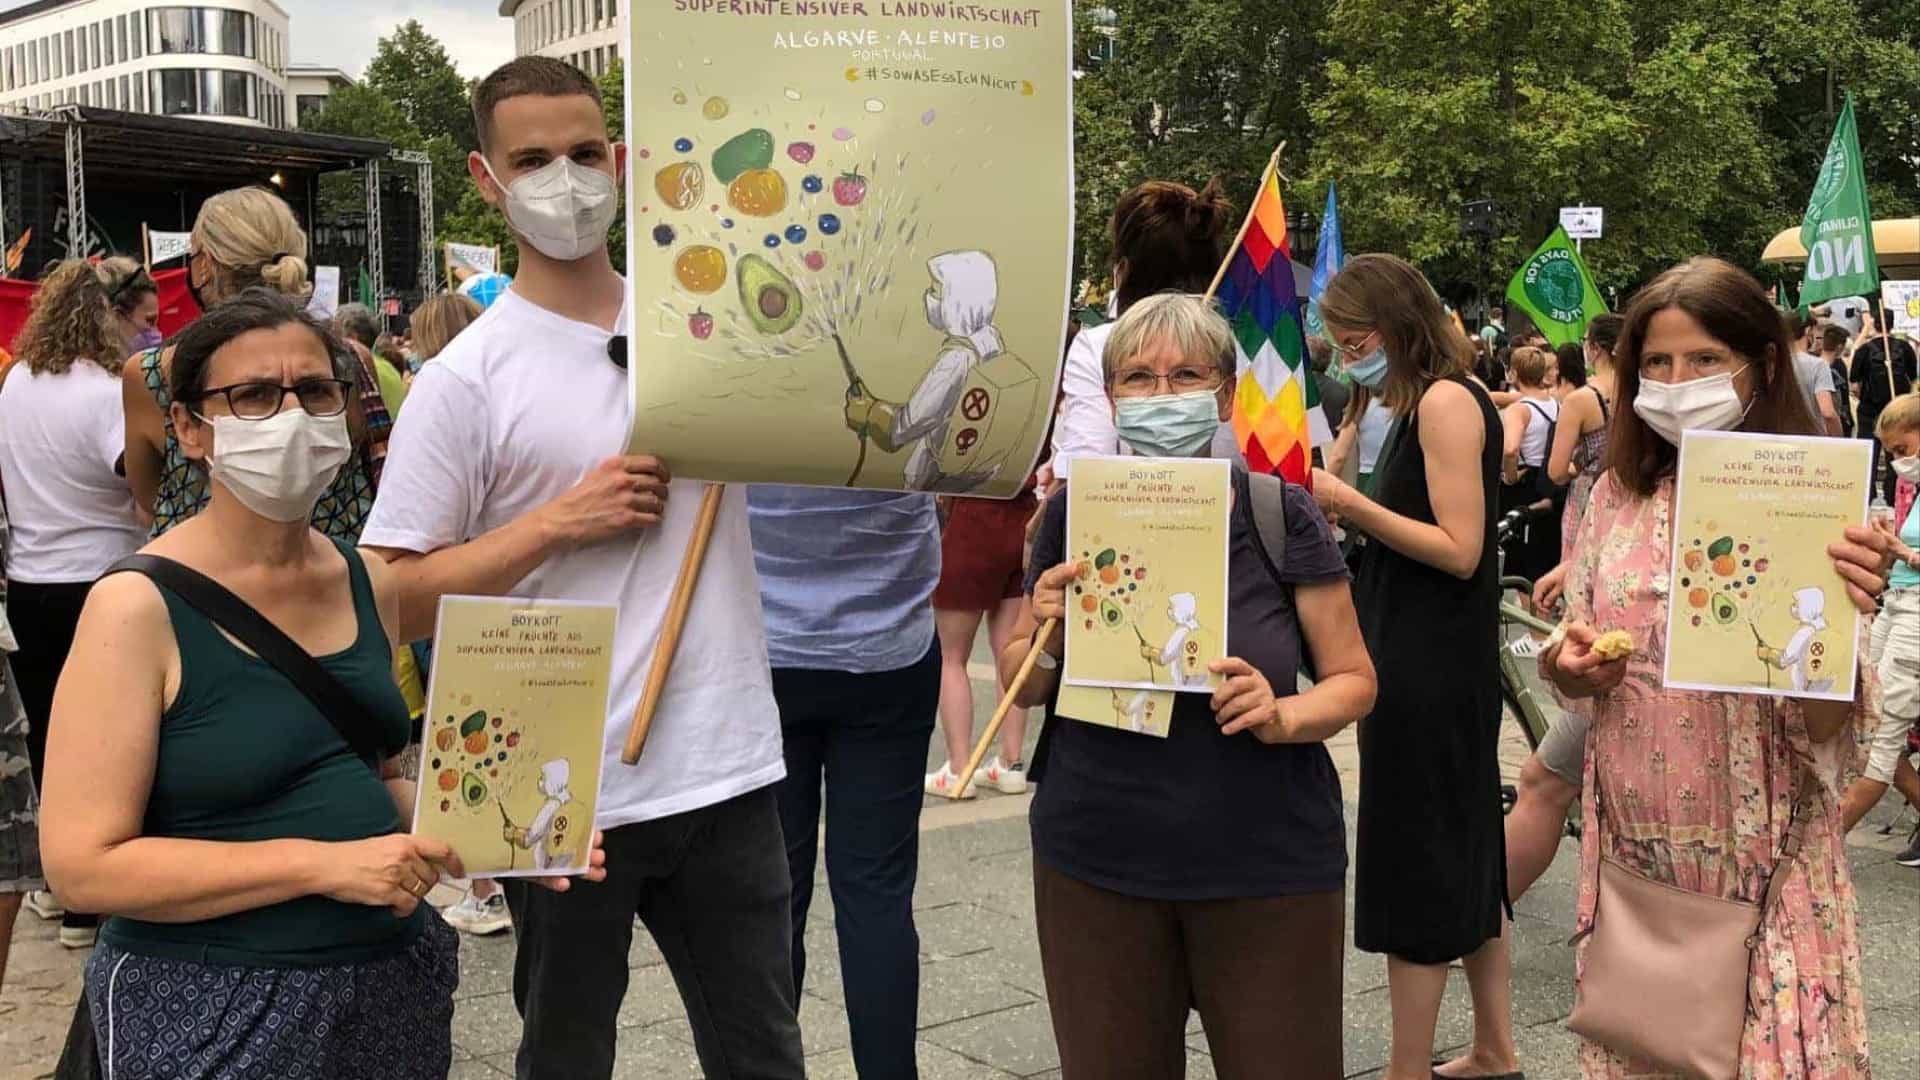 Ativistas alemães pedem boicote a estufas do Alentejo e Algarve